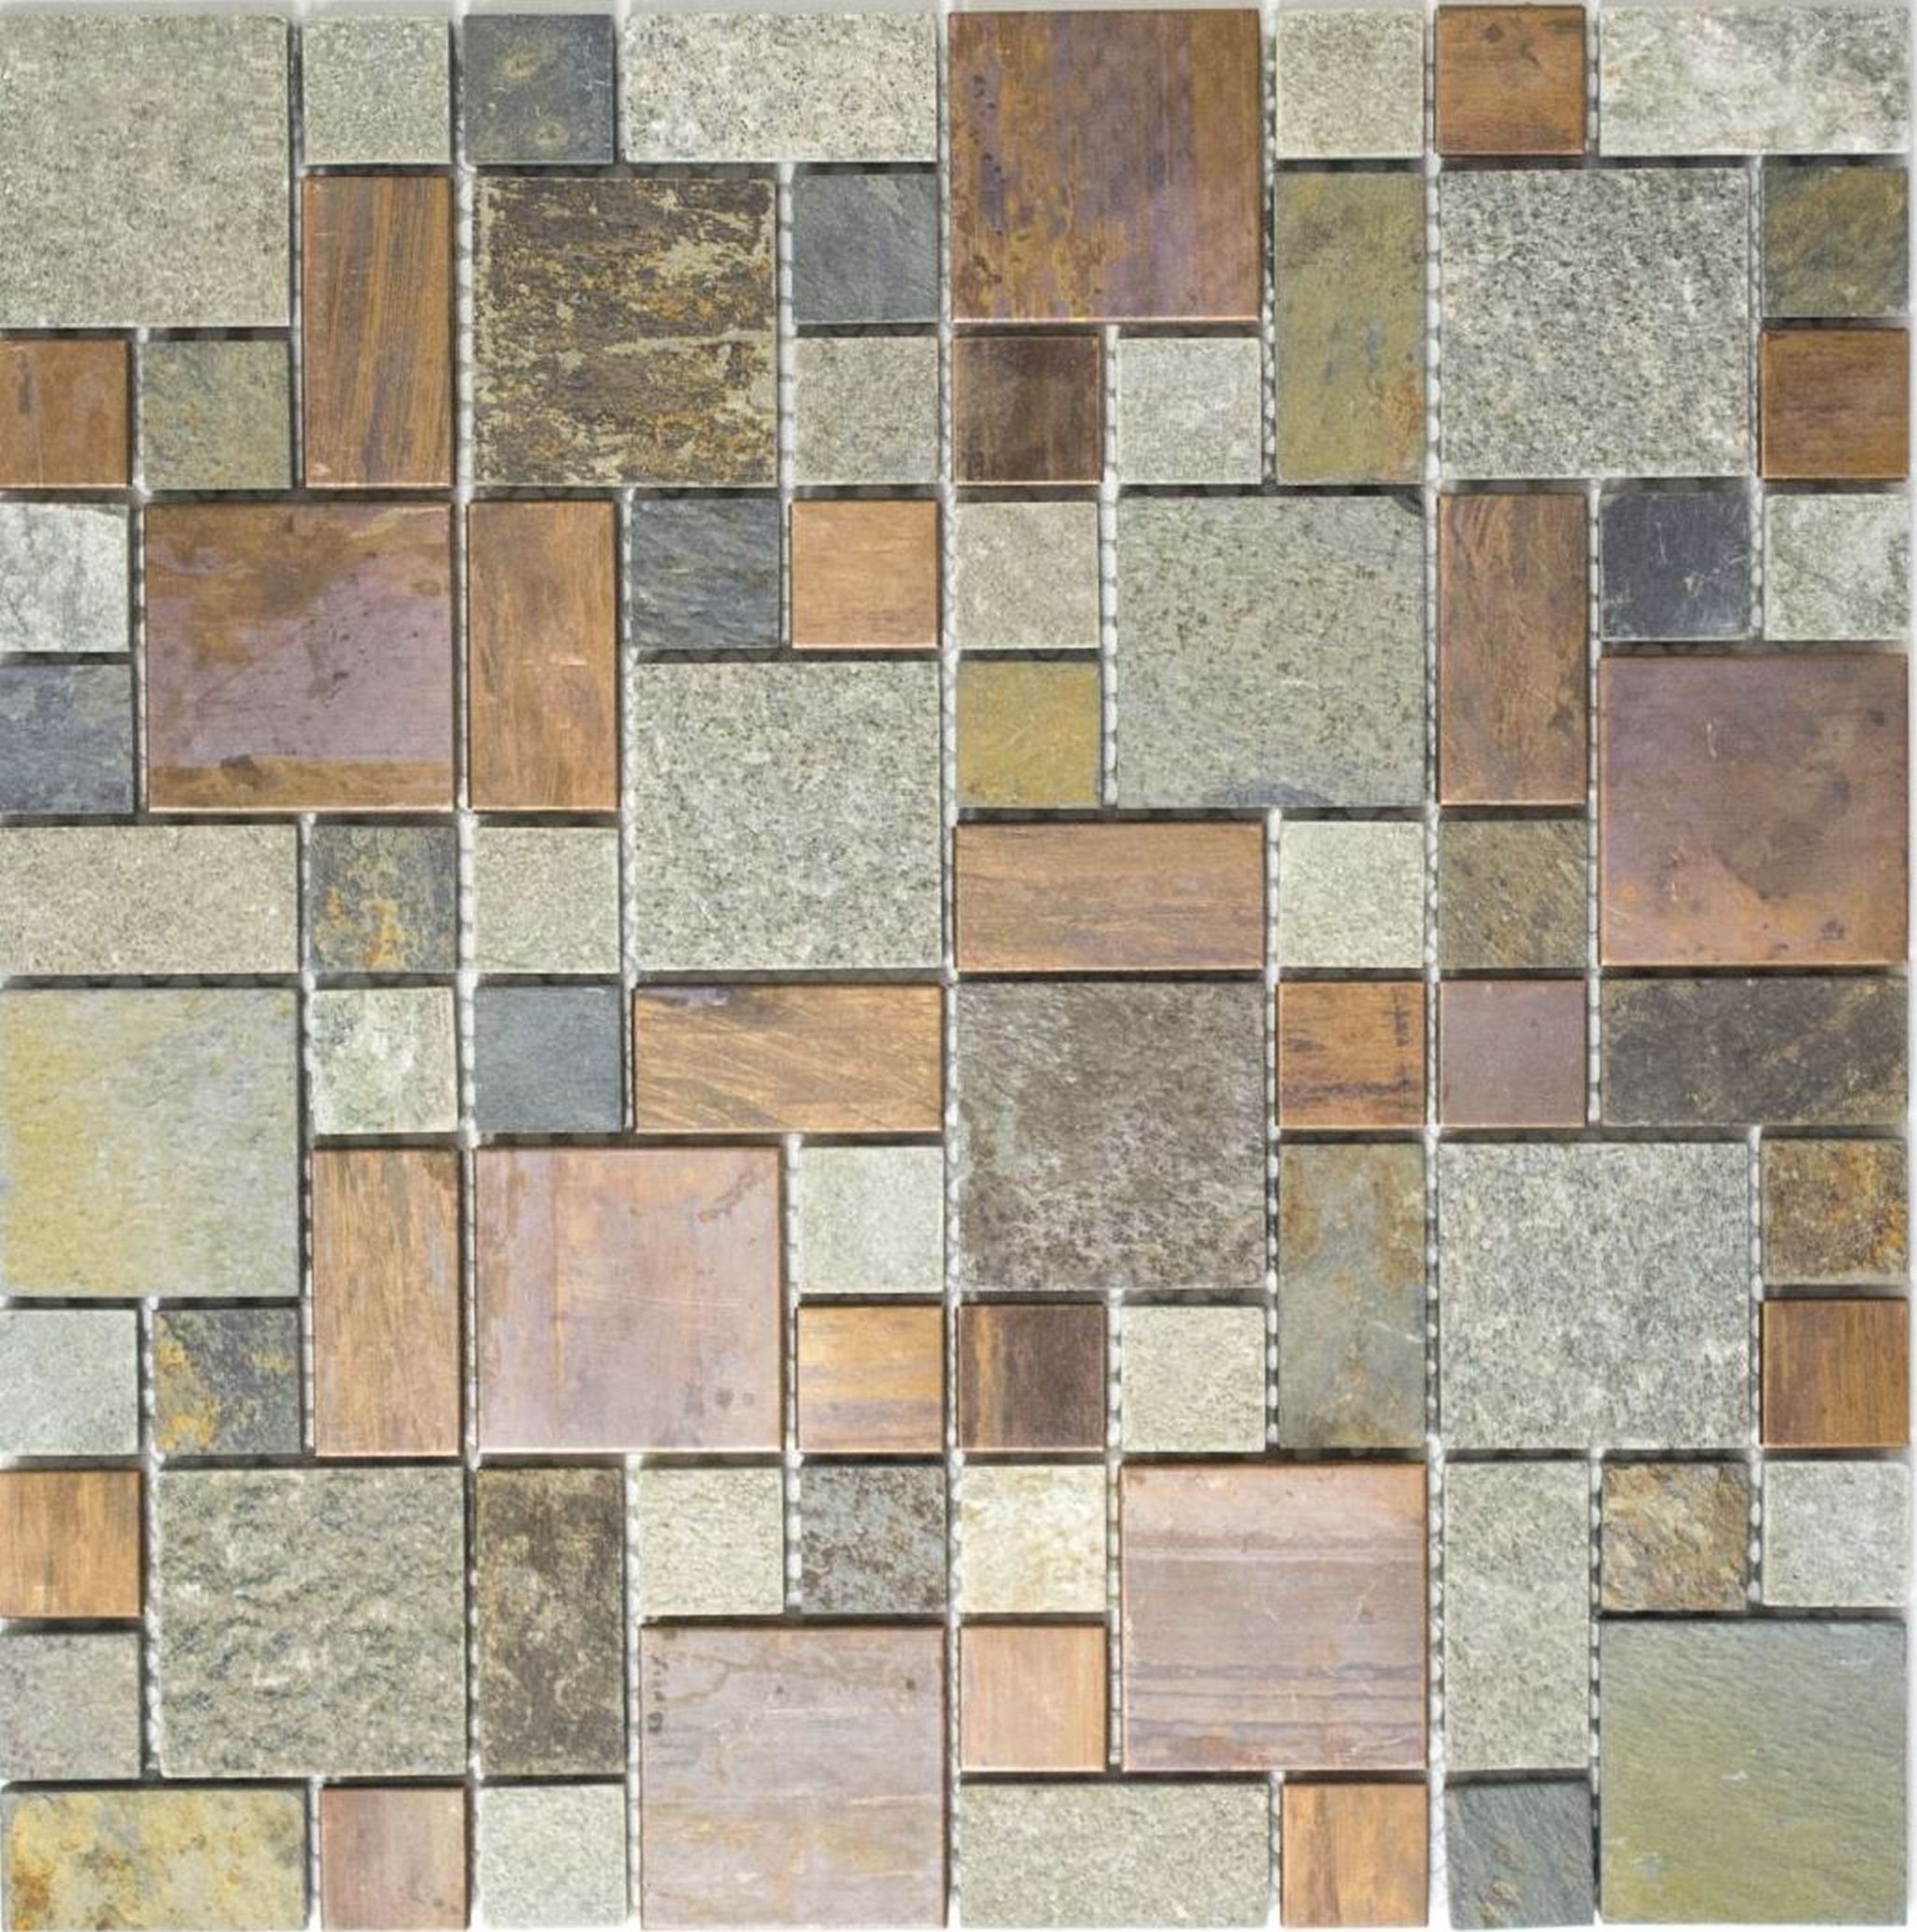 Mosani Mosaikfliesen Kupfermosaik Fliese grau rost Kombination Küchenrückwand Stein